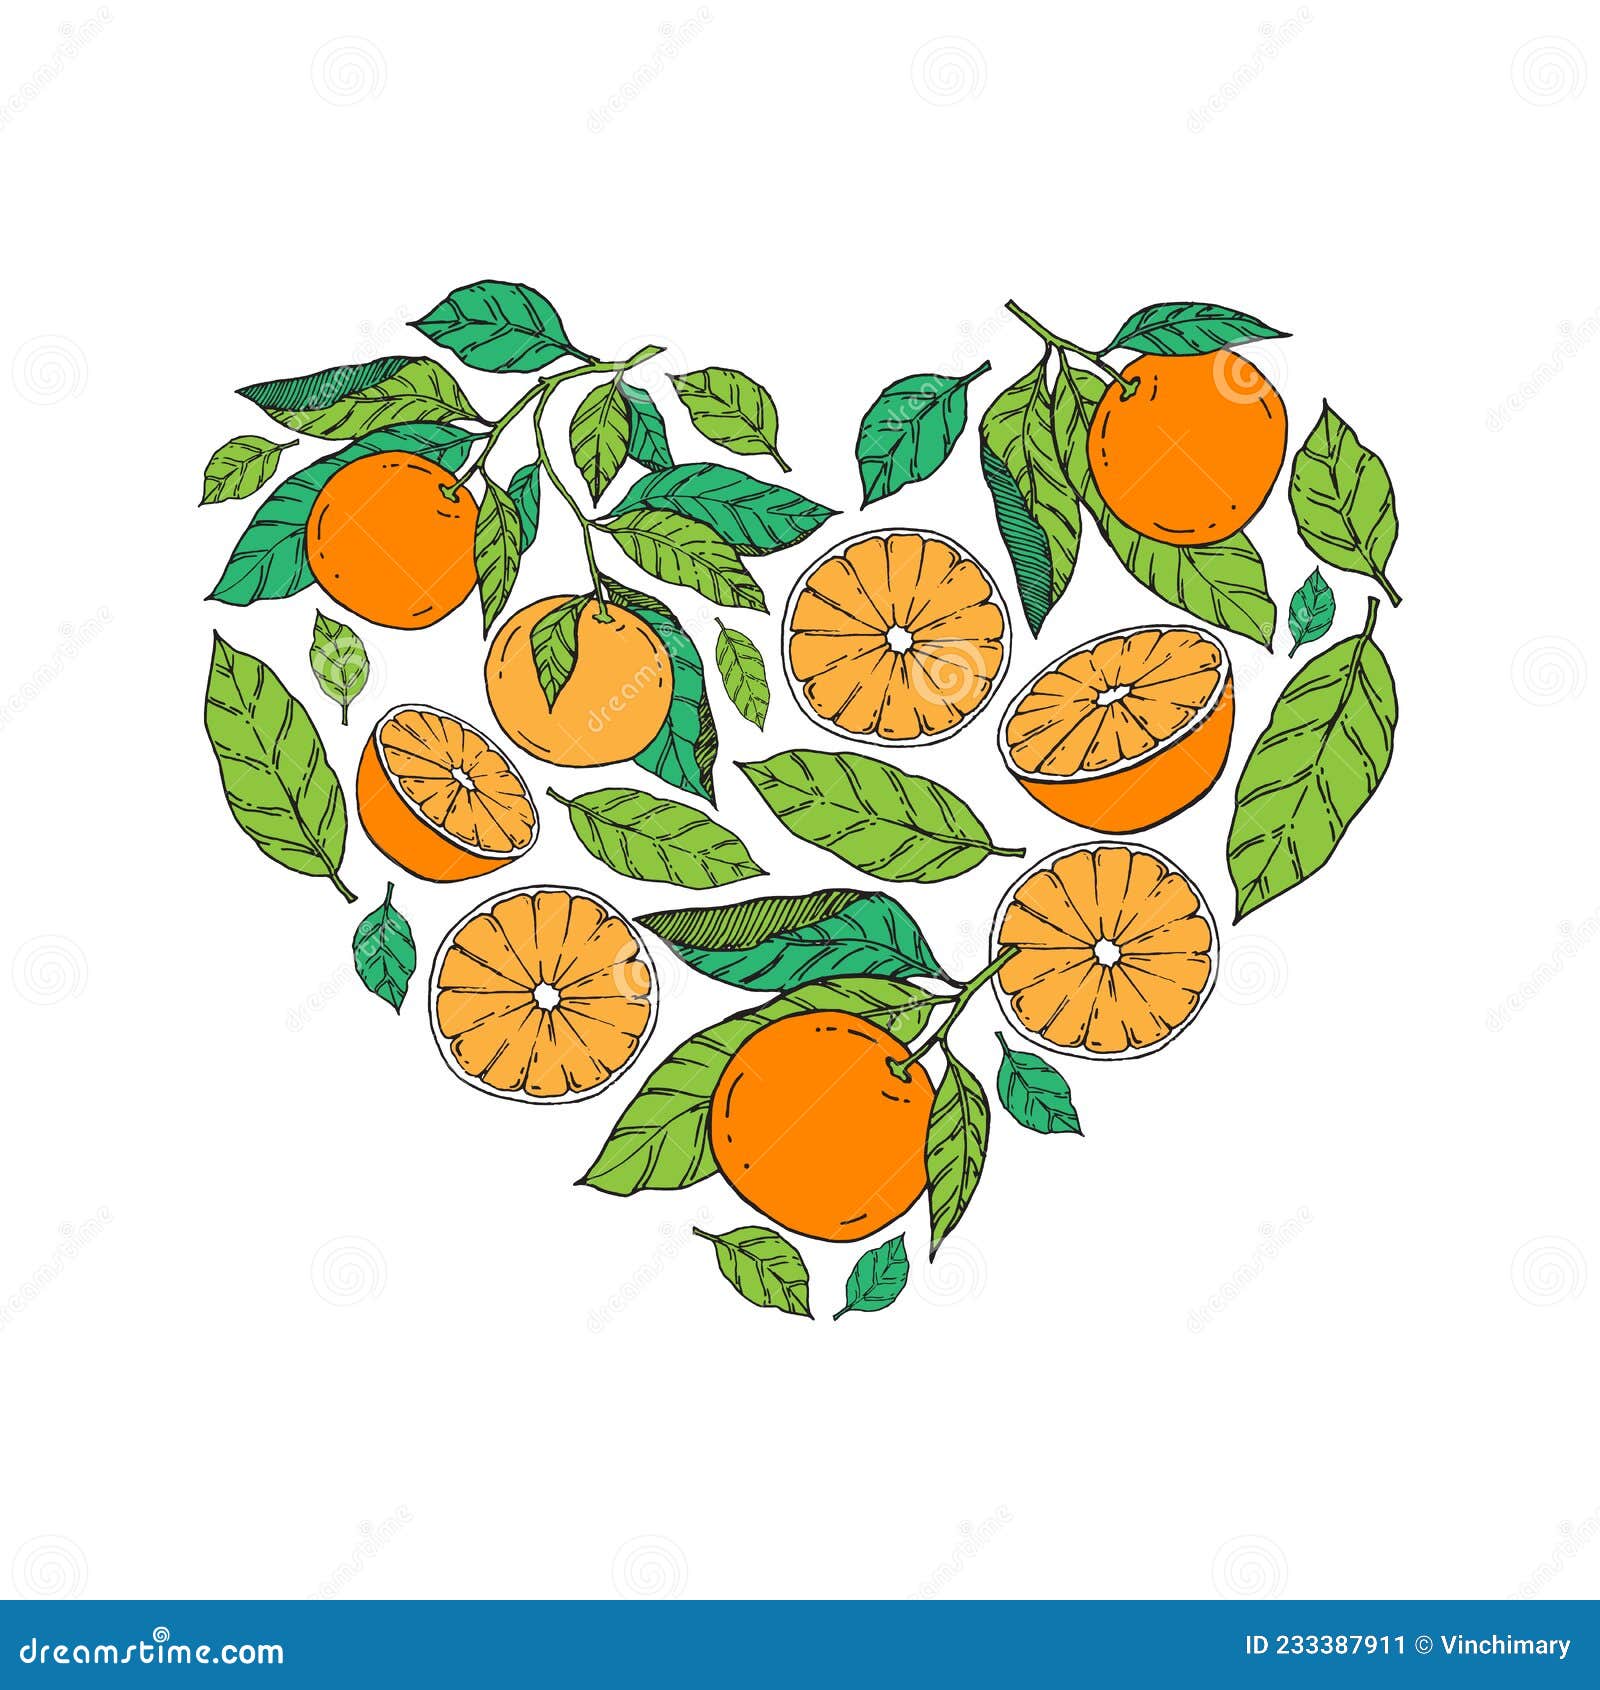 切开的橘子图片大全-切开的橘子高清图片下载-觅知网